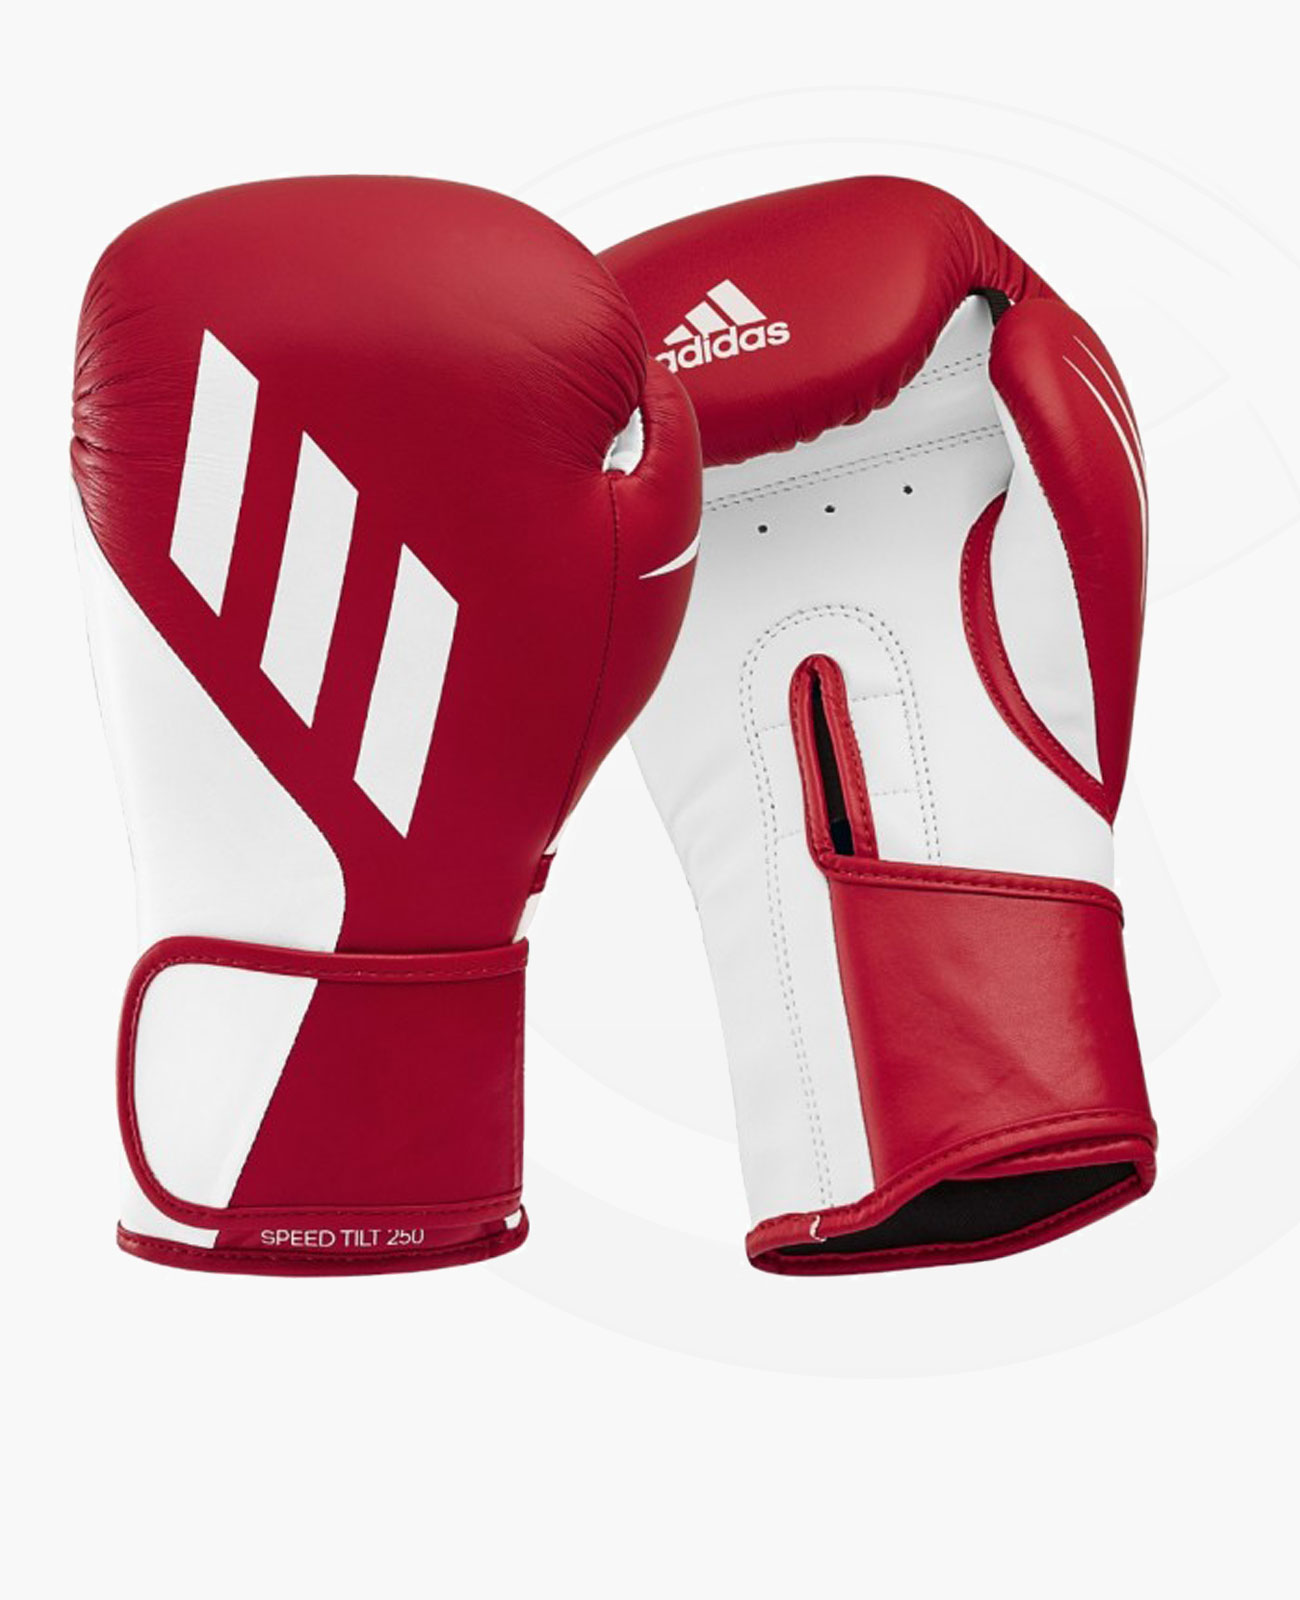 adidas TILT 250 Boxhandschuhe rot weiss | Fightshop & Budo Ausrüstung